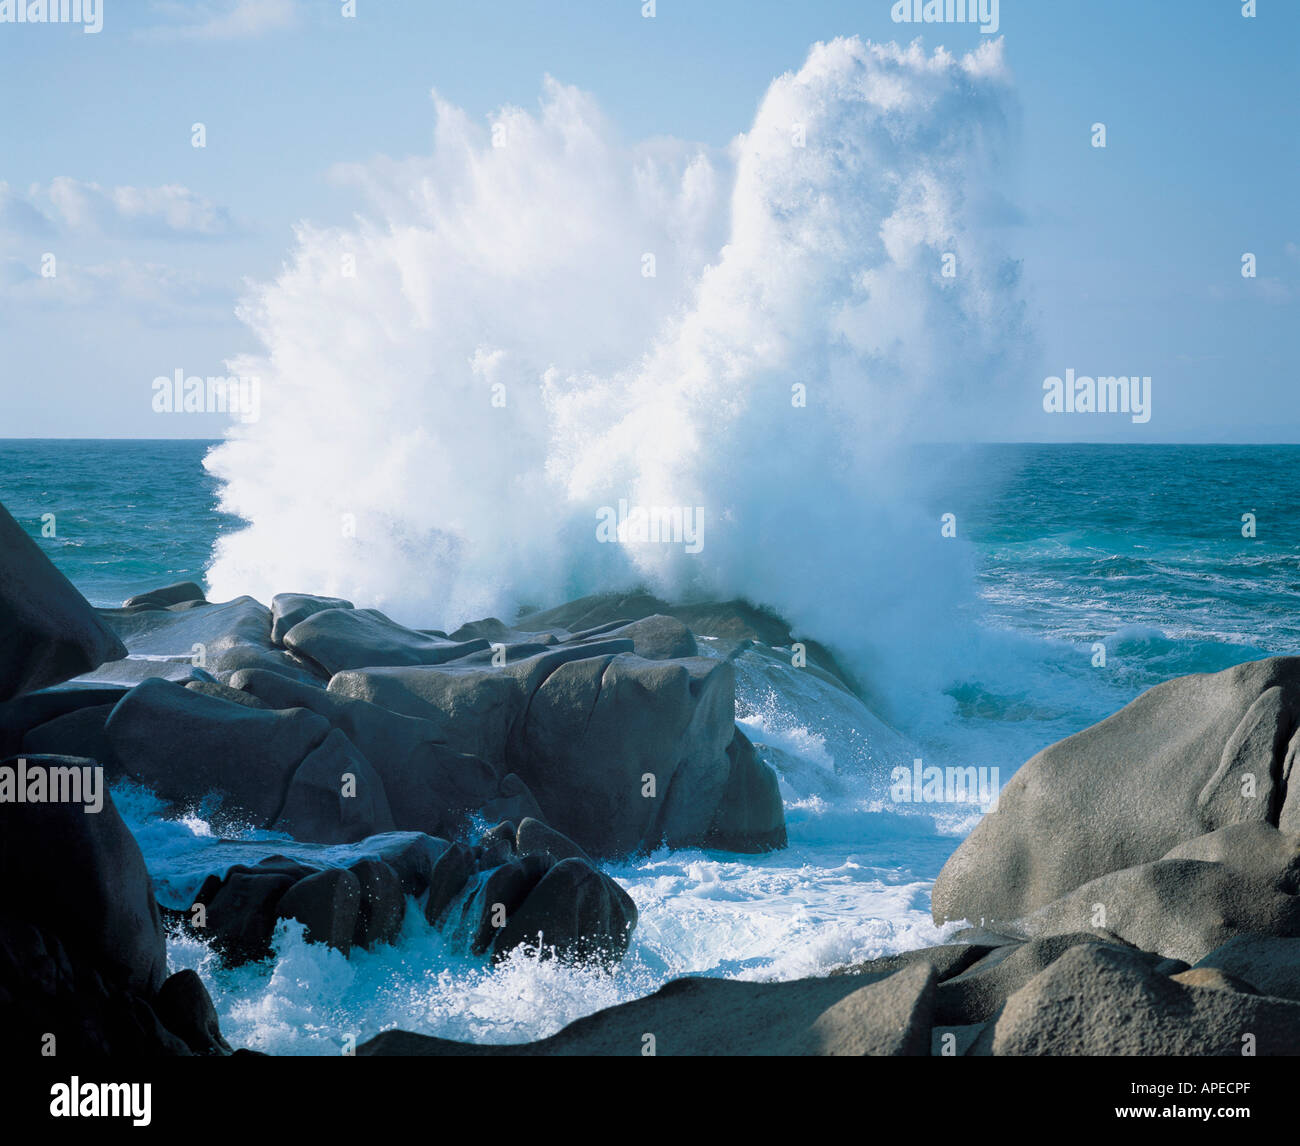 Waves crashing on rocks at coast Stock Photo